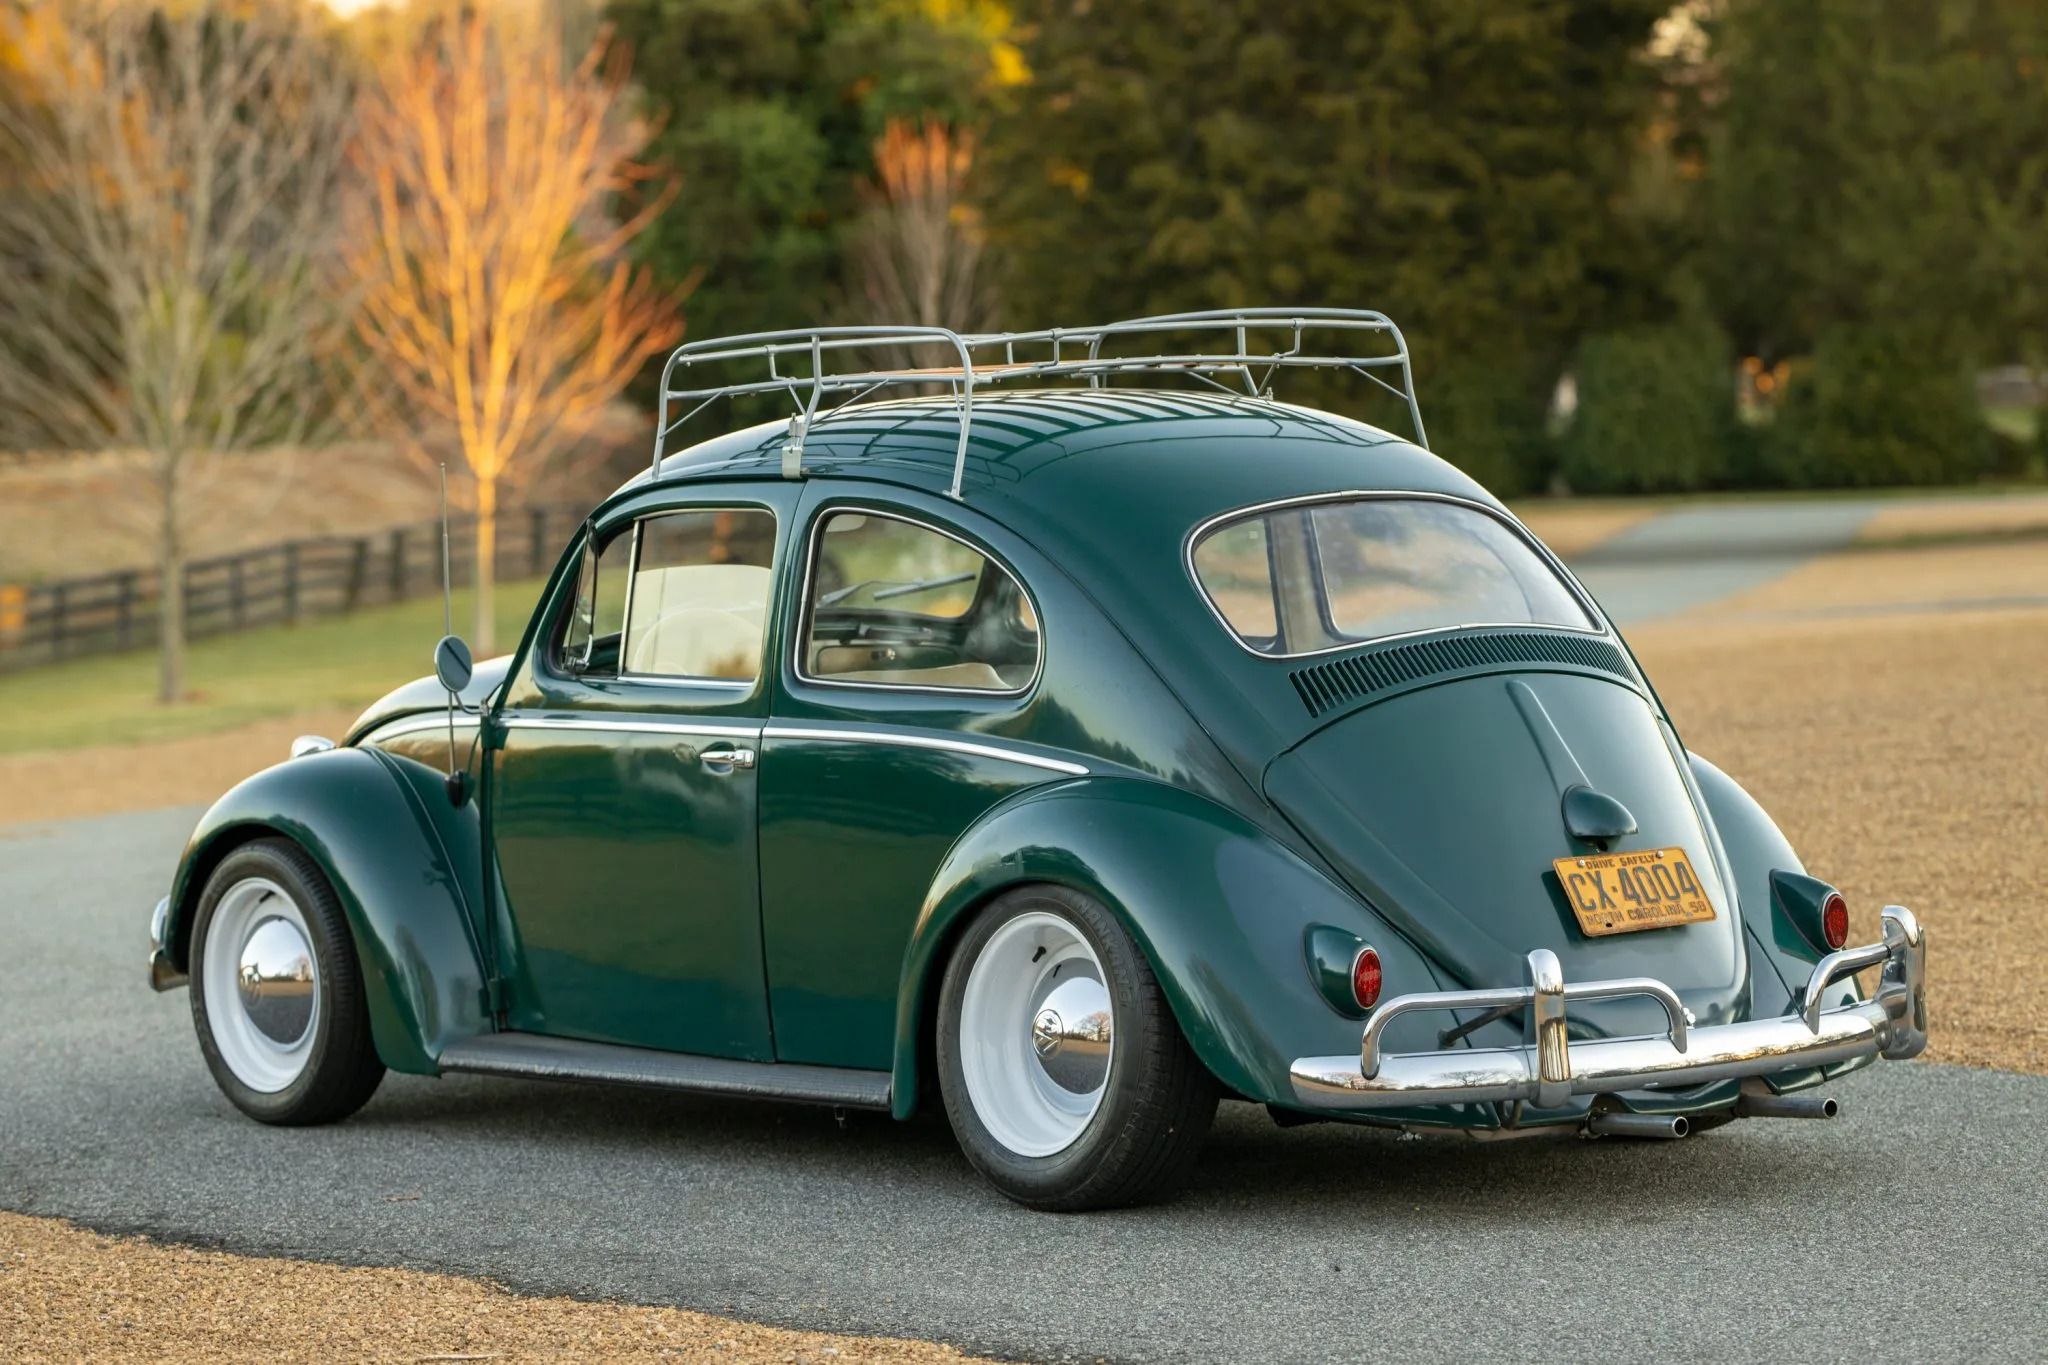 VW Beetle verde de 1958 estacionado